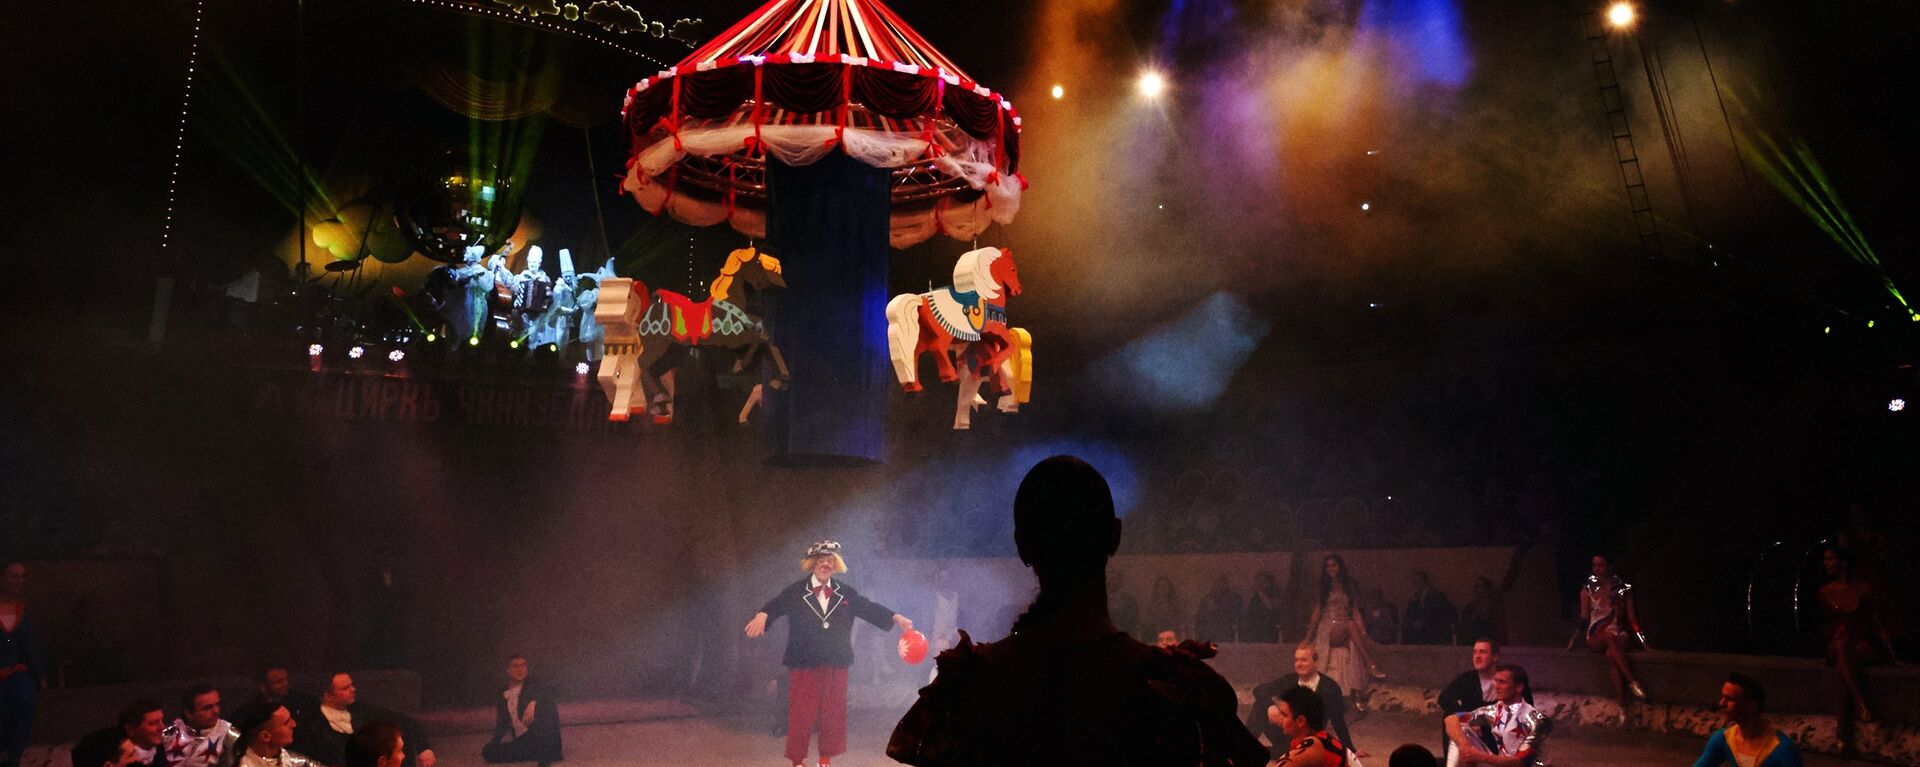 Премьера новой цирковой программы Пусть всегда будет солнце с участием клоуна Олега Попова - Sputnik Узбекистан, 1920, 12.04.2021